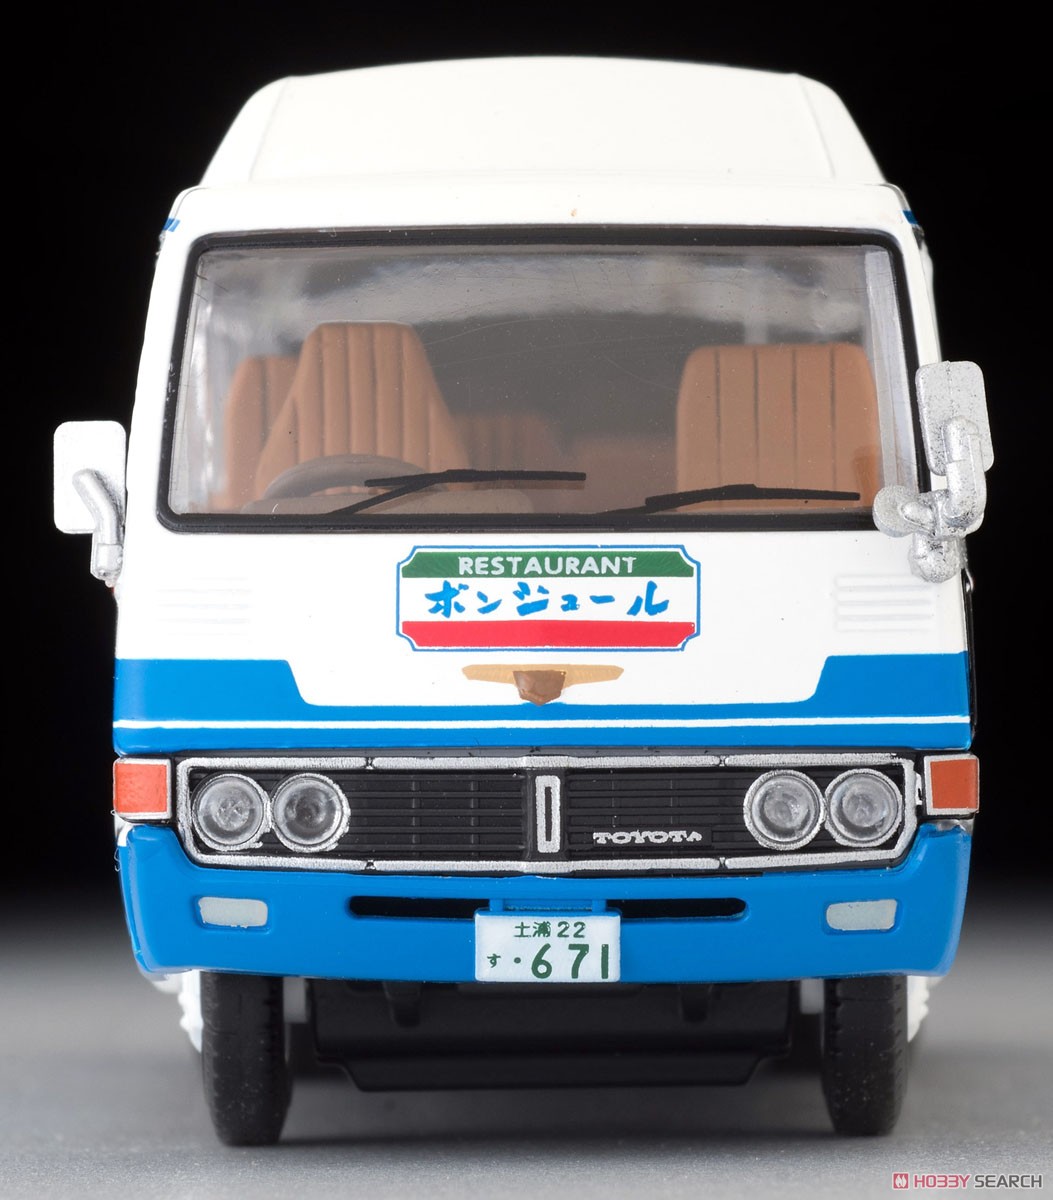 TLV-184a トヨタ コースター クーラー車 (レストラン ボンジュール) (ミニカー) 商品画像5